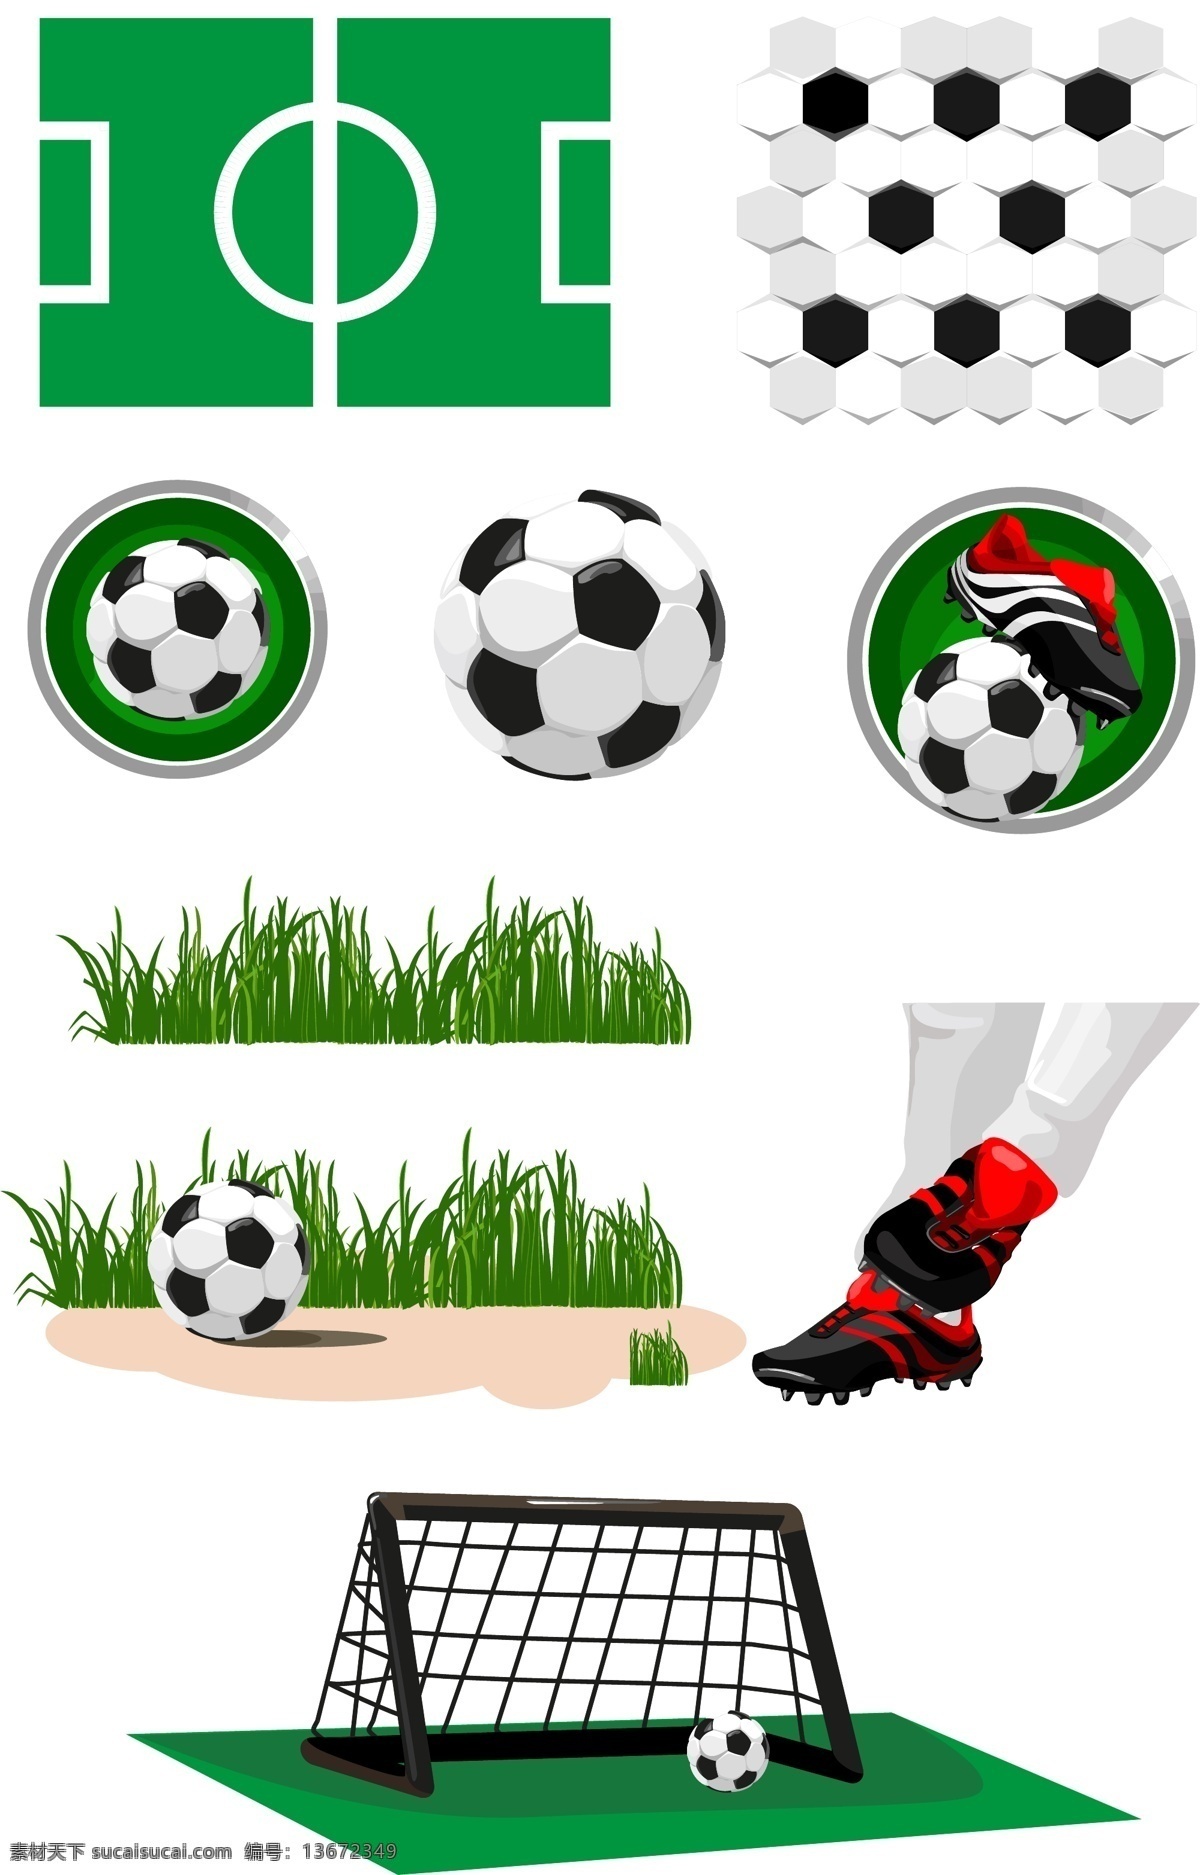 足球 足球场 球场 脚 草地 足球图标 足球素材 矢量足球 足球设计 草 绿草 矢量素材 体育运动 生活百科 白色